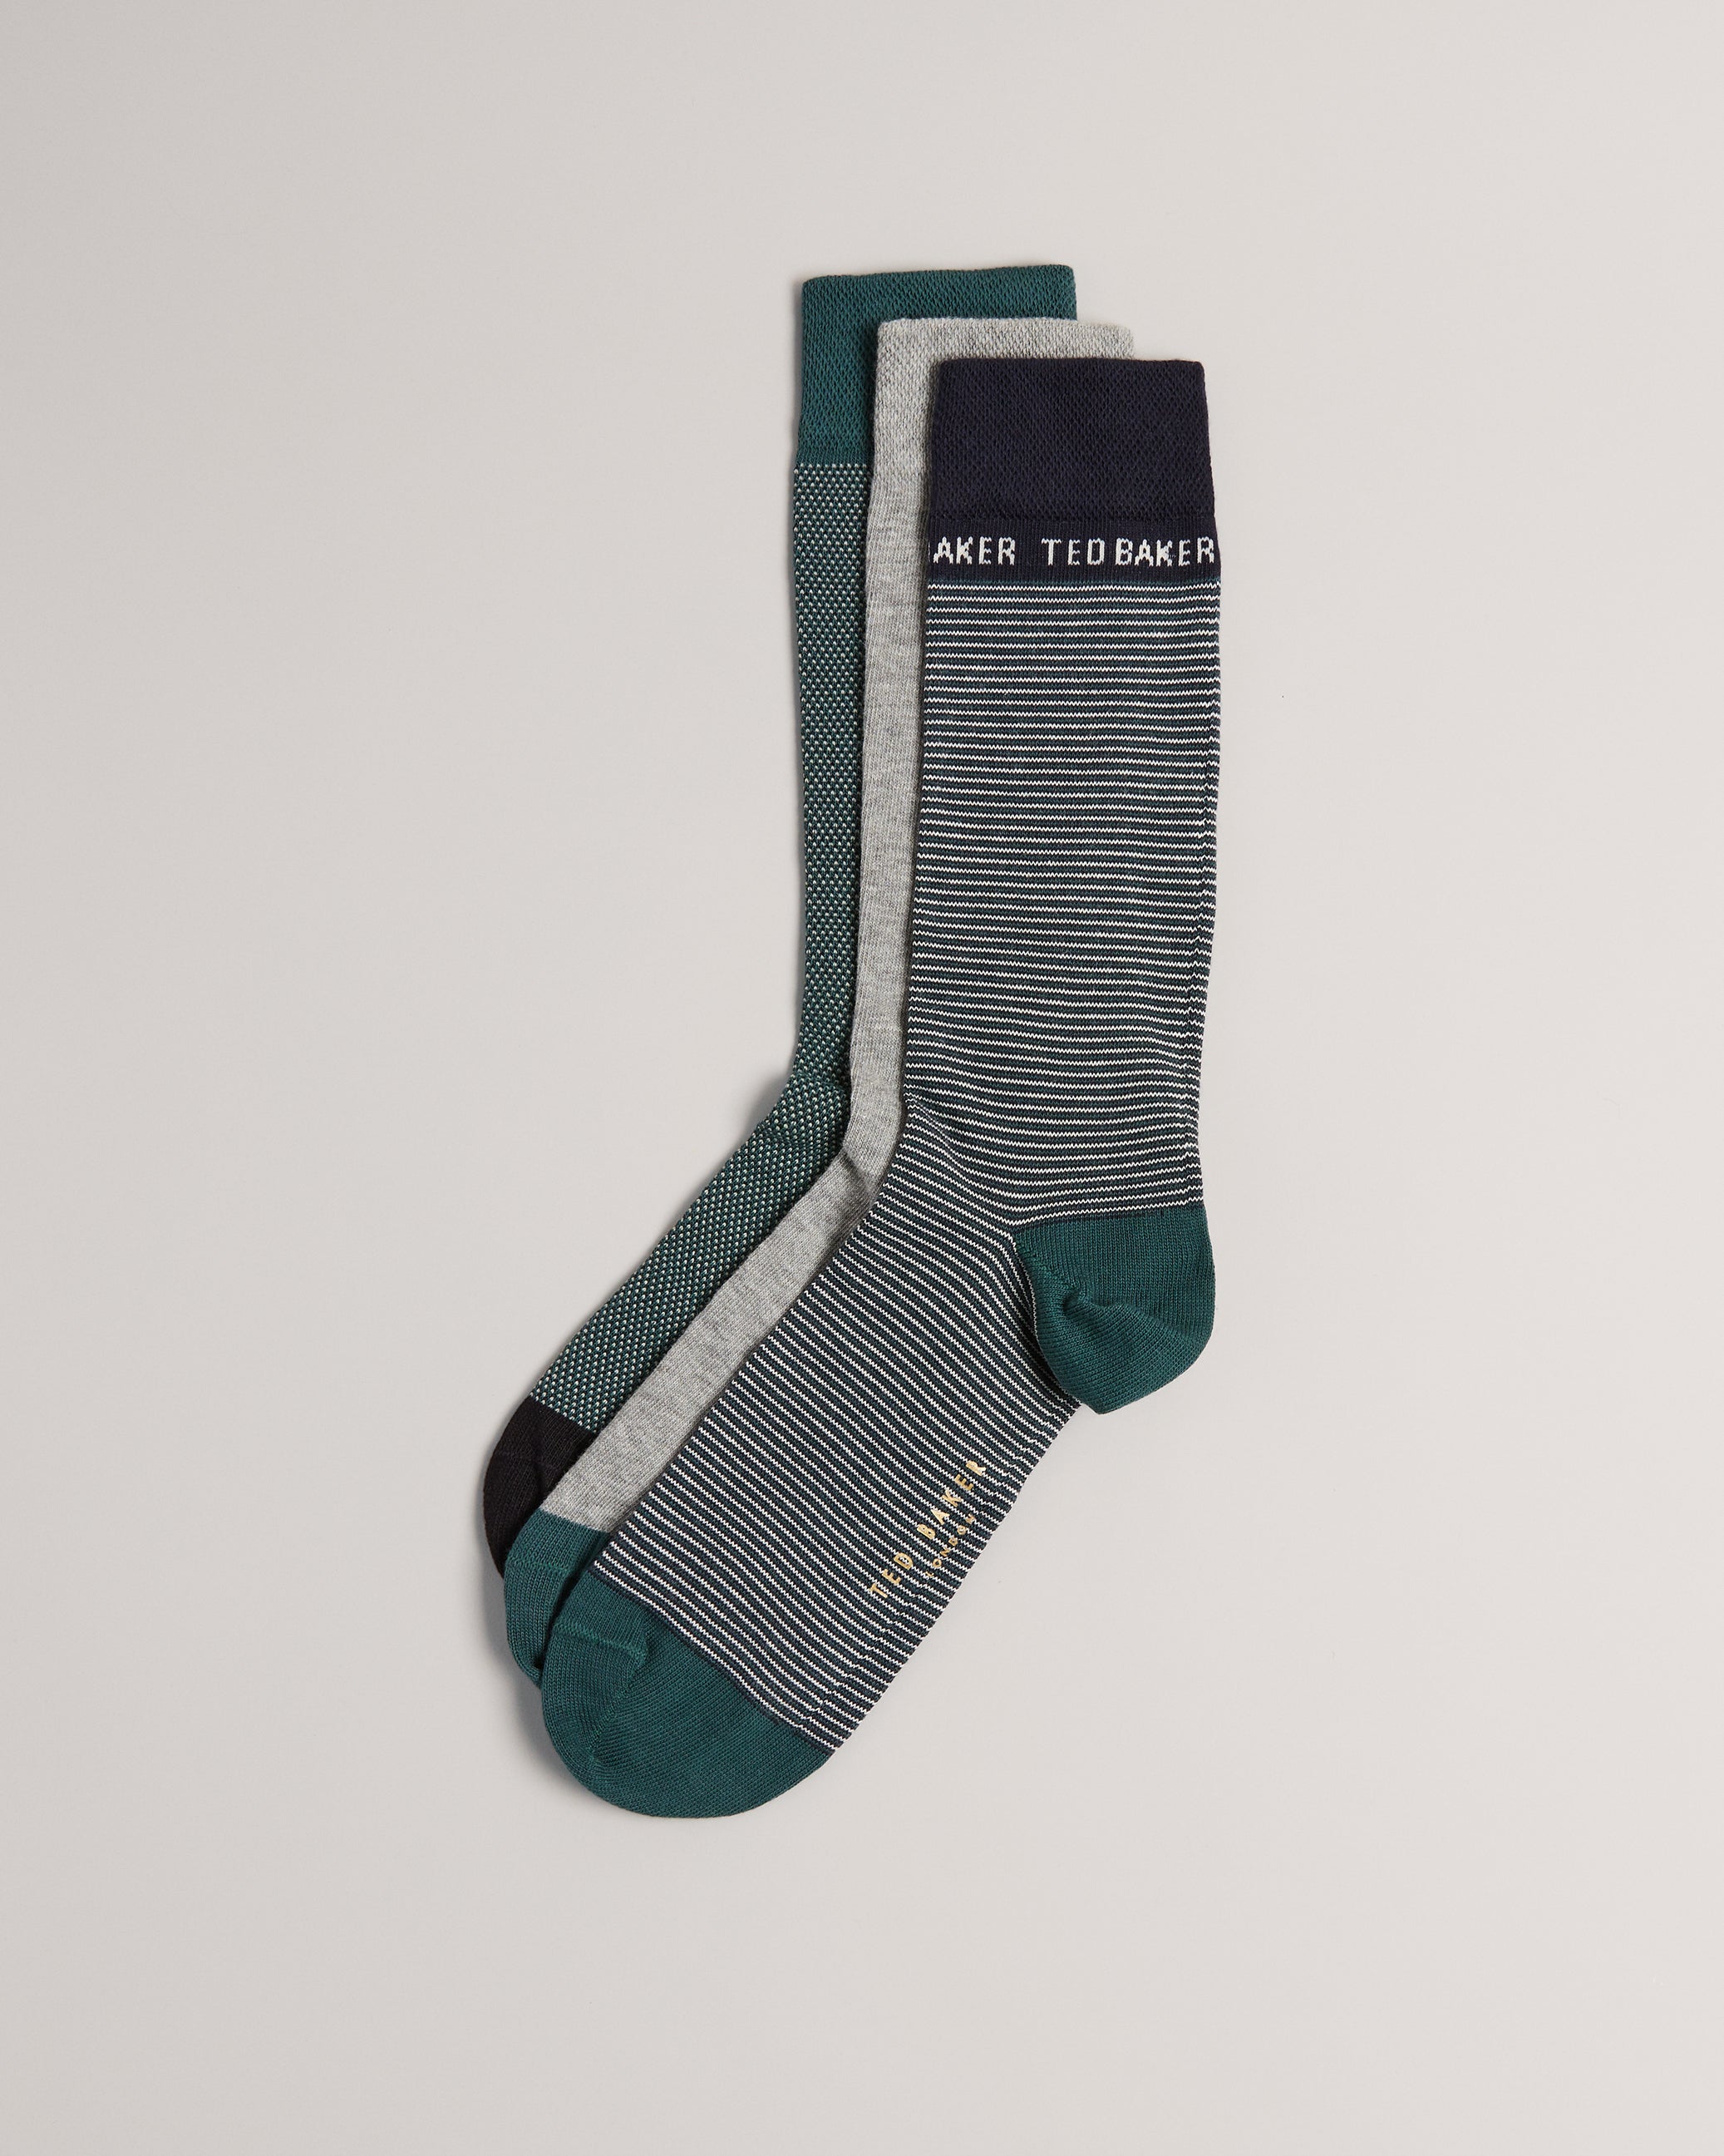 TED BAKER Luxury Sock Mens 3pk Hoisted Asst Design & Col Organic Socks BNIP  R£22